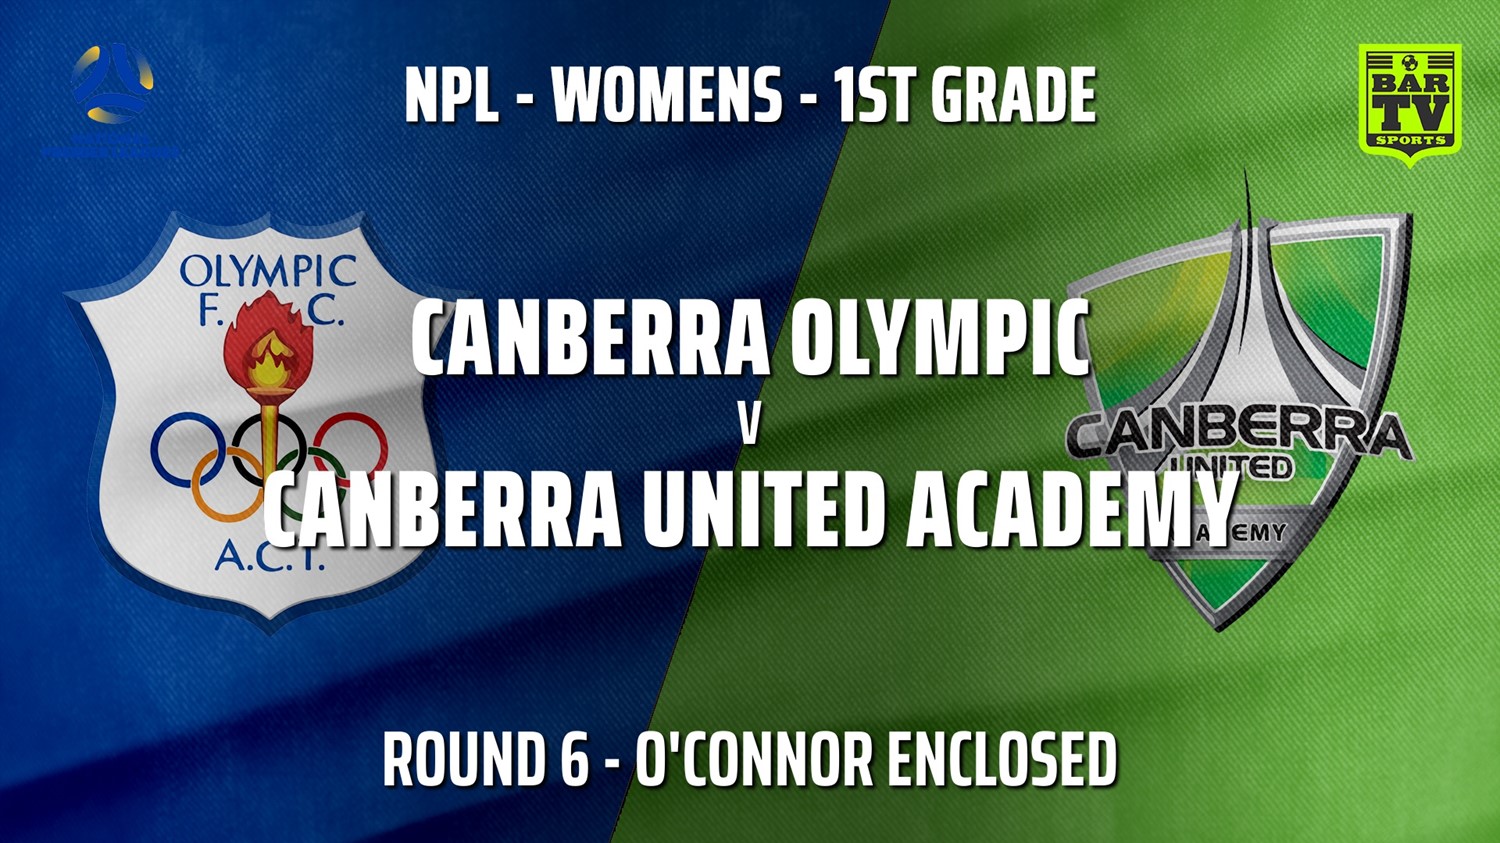 210516-NPLW - Capital Round 6 - Canberra Olympic FC (women) v Canberra United Academy Minigame Slate Image